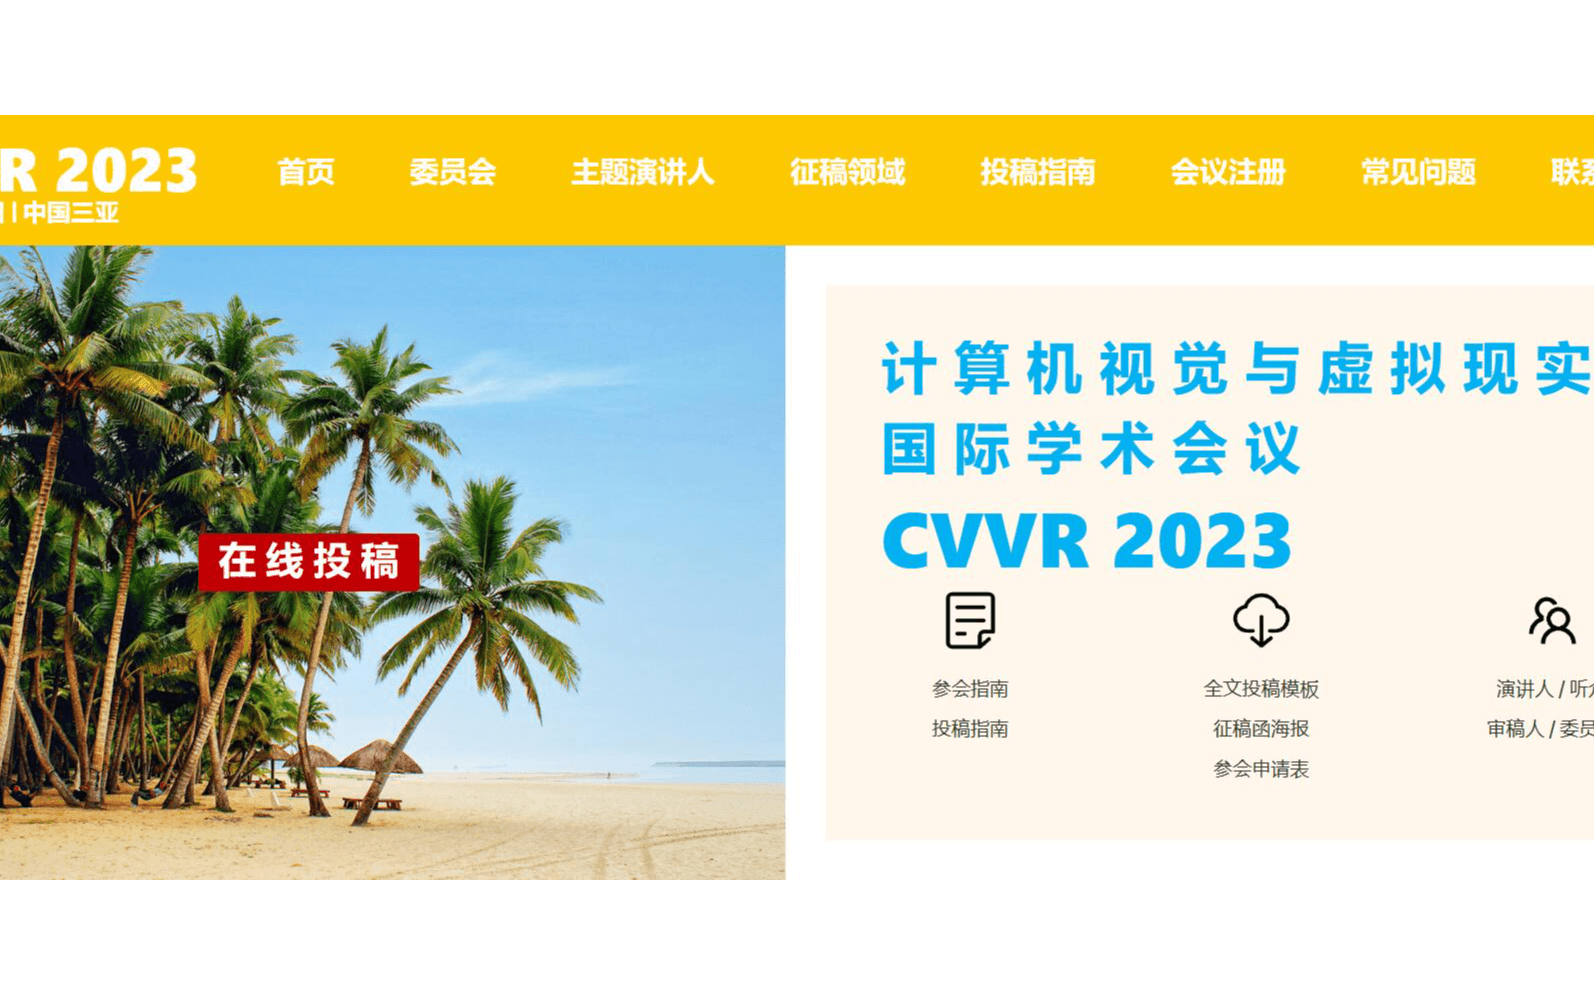 计算机视觉与虚拟现实国际学术会议——CVVR 2023